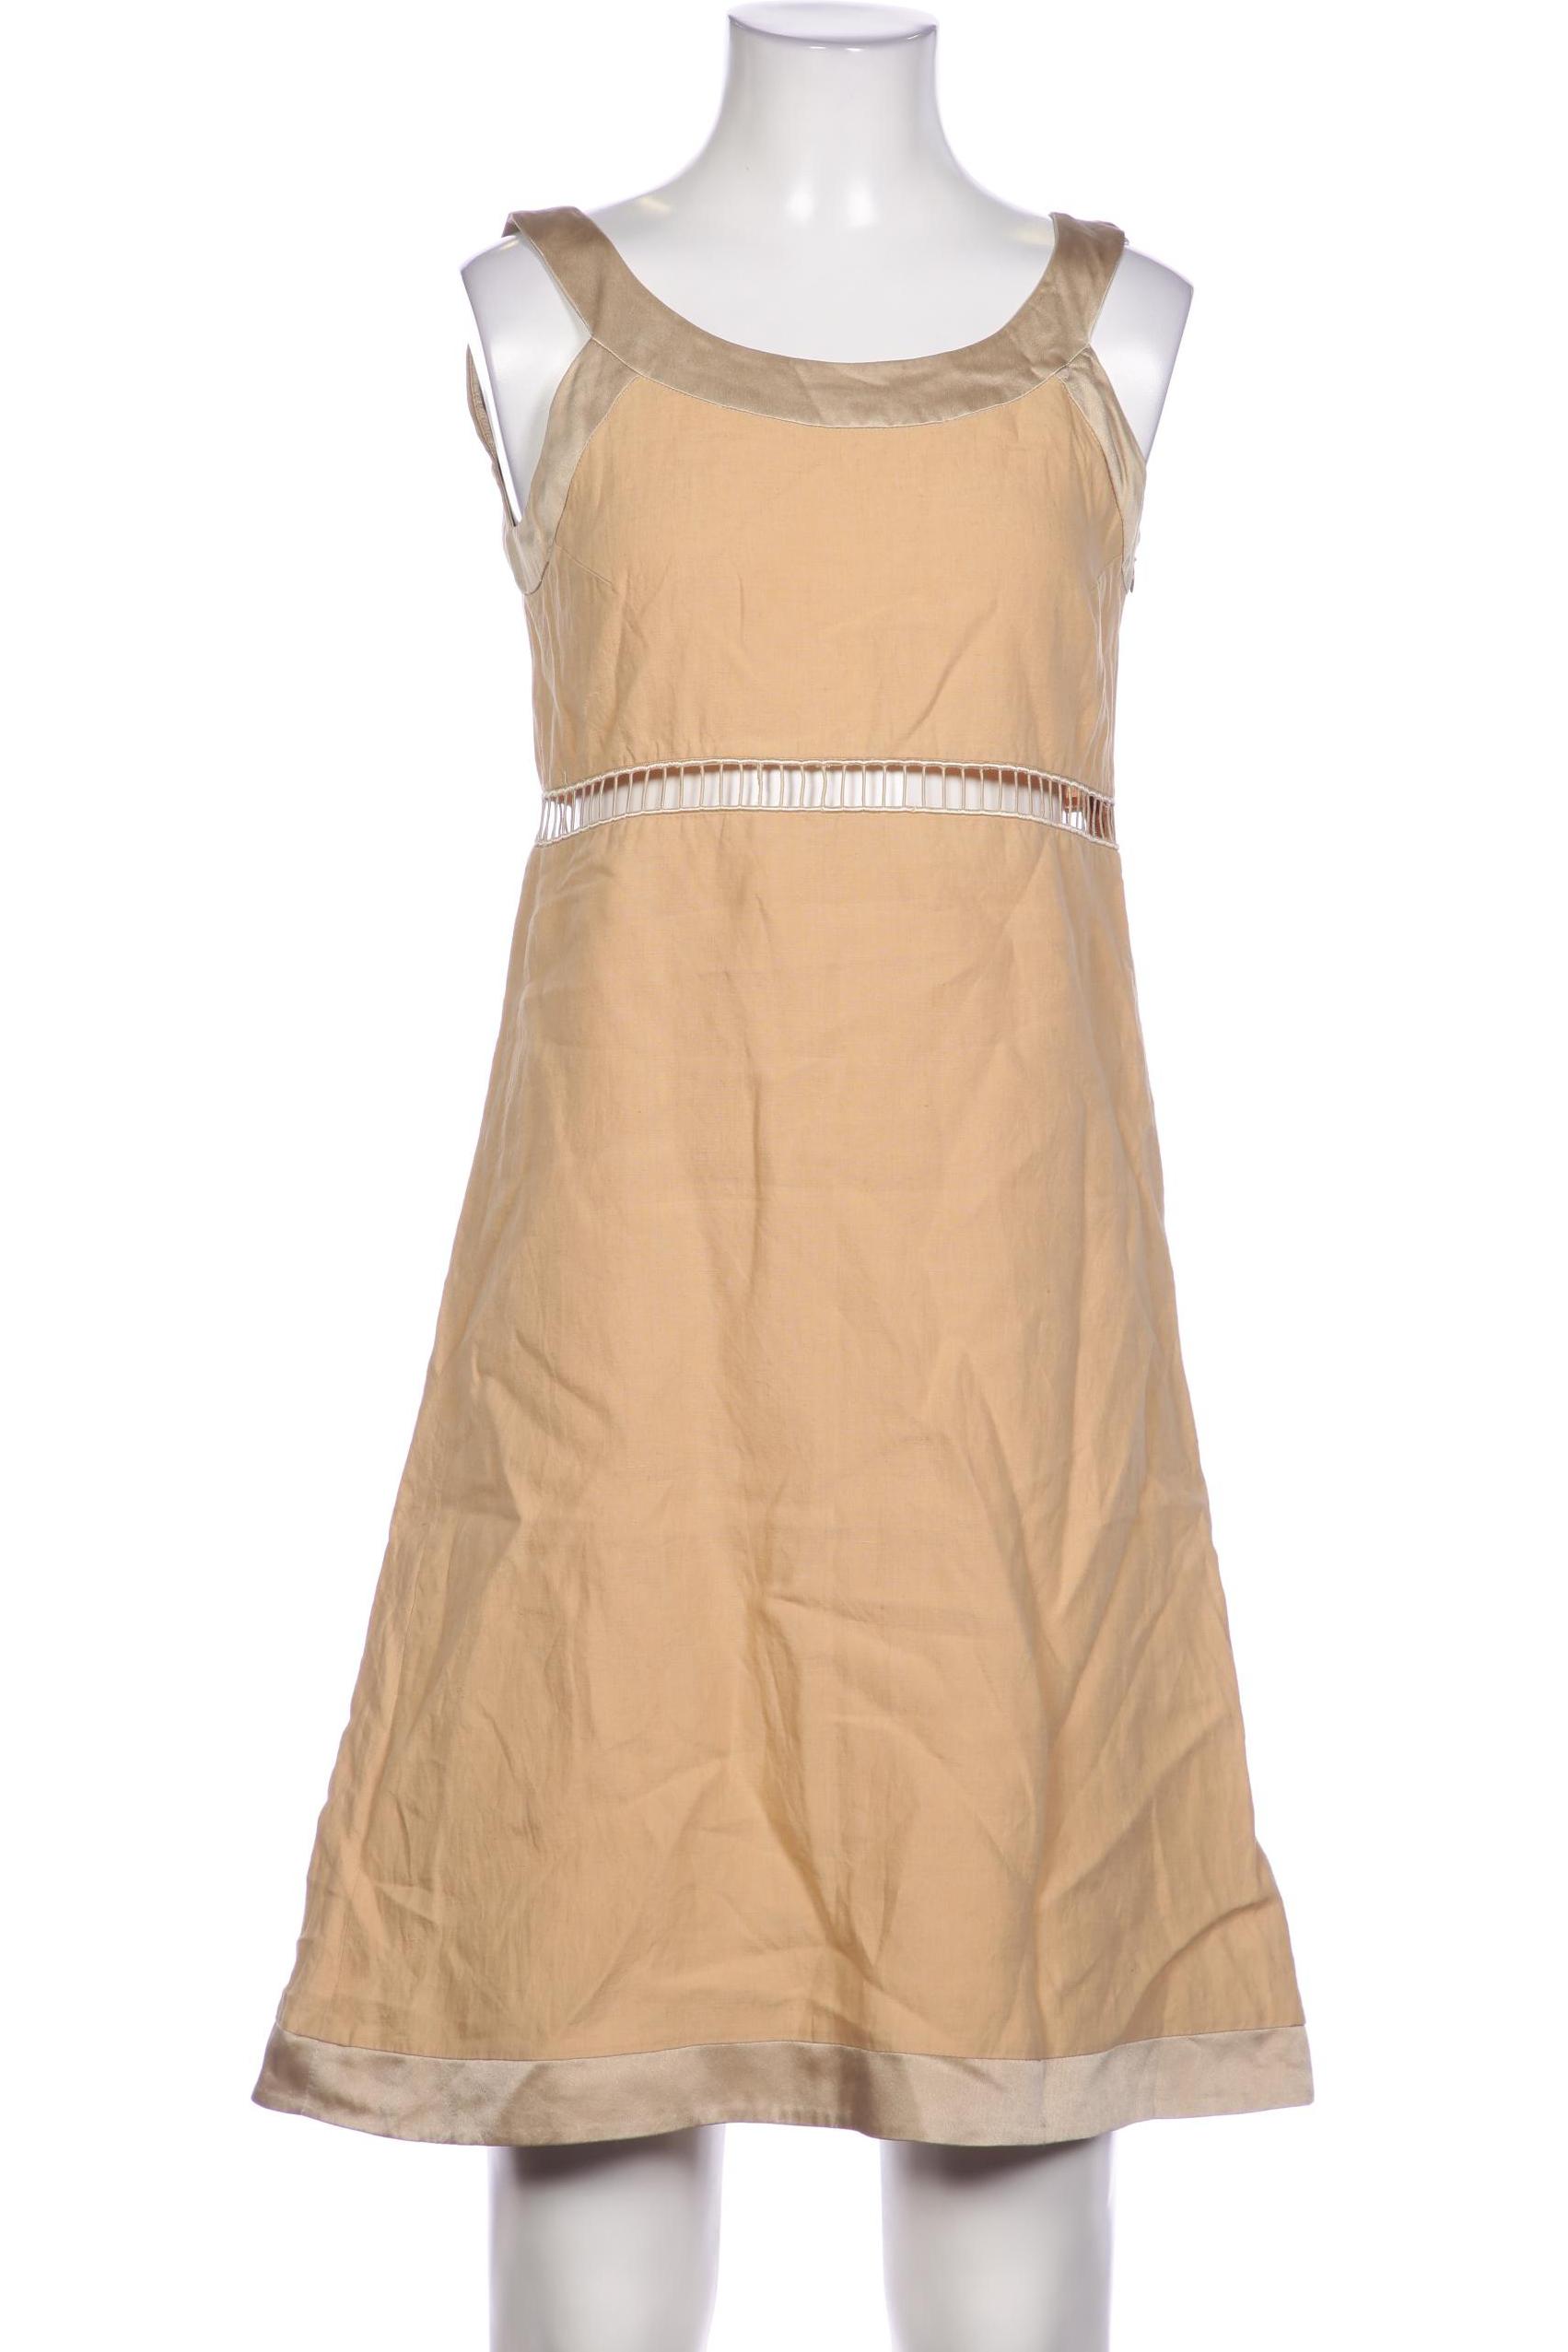 Aigner Damen Kleid, beige, Gr. 34 von aigner